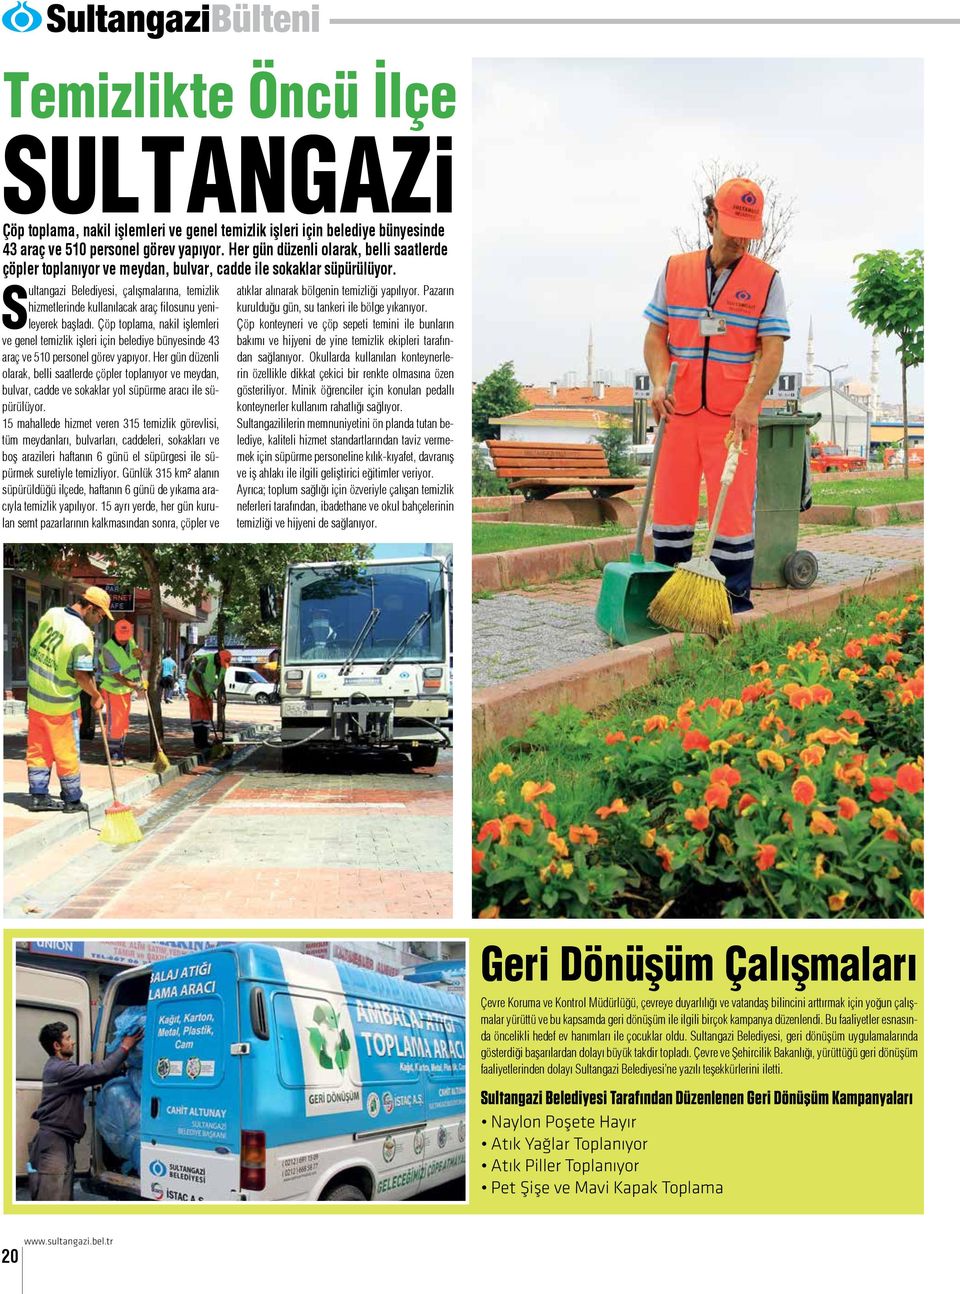 Sultangazi Belediyesi, çalışmalarına, temizlik hizmetlerinde kullanılacak araç filosunu yenileyerek başladı.